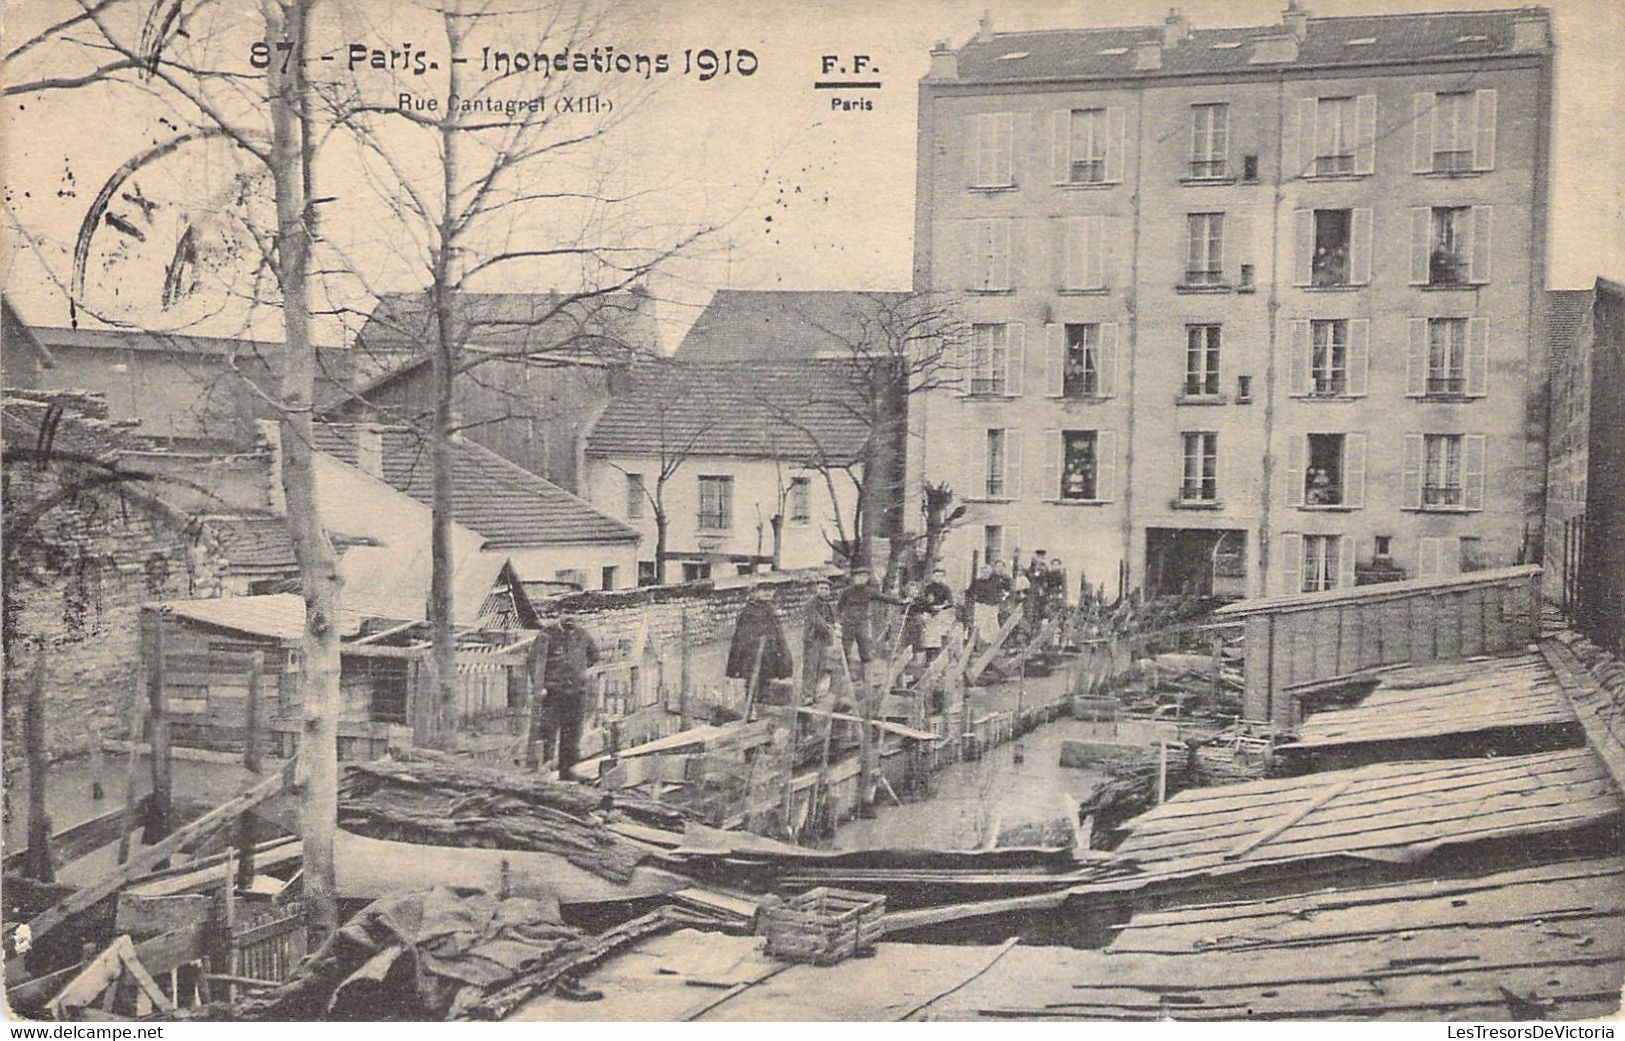 CPA France - Paris - Inondations De 1910 - Rue Cantagrel - XIIIe - F. F. Paris - Oblitérée Bruxelles 1910 - Paris Flood, 1910